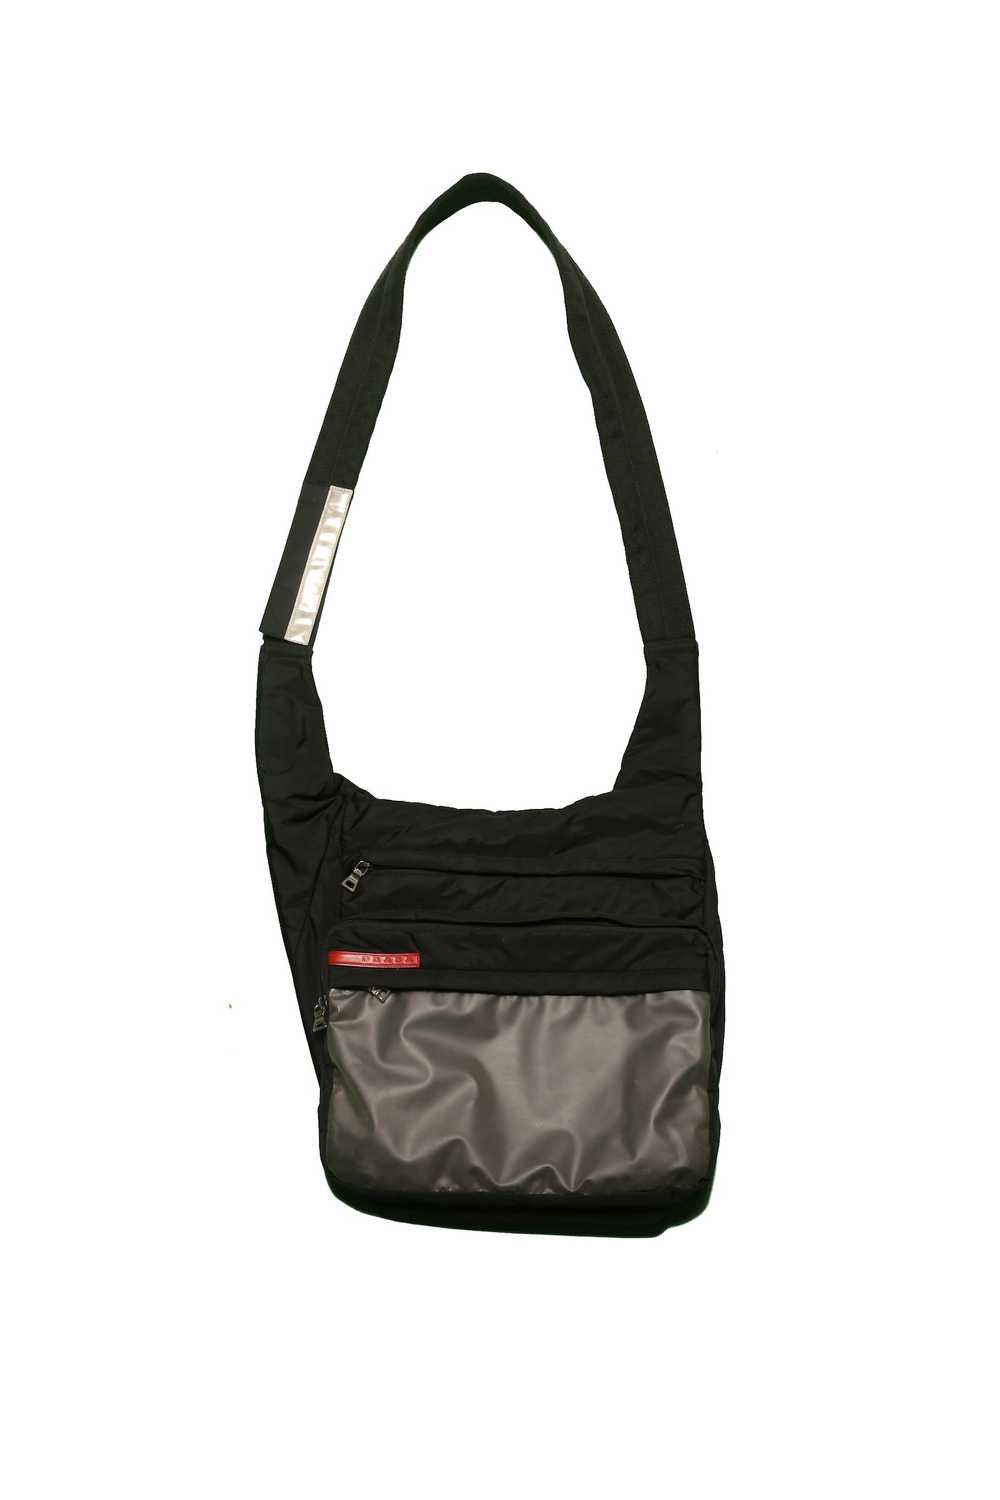 Prada Prada Transparent Shoulder Bag - image 1